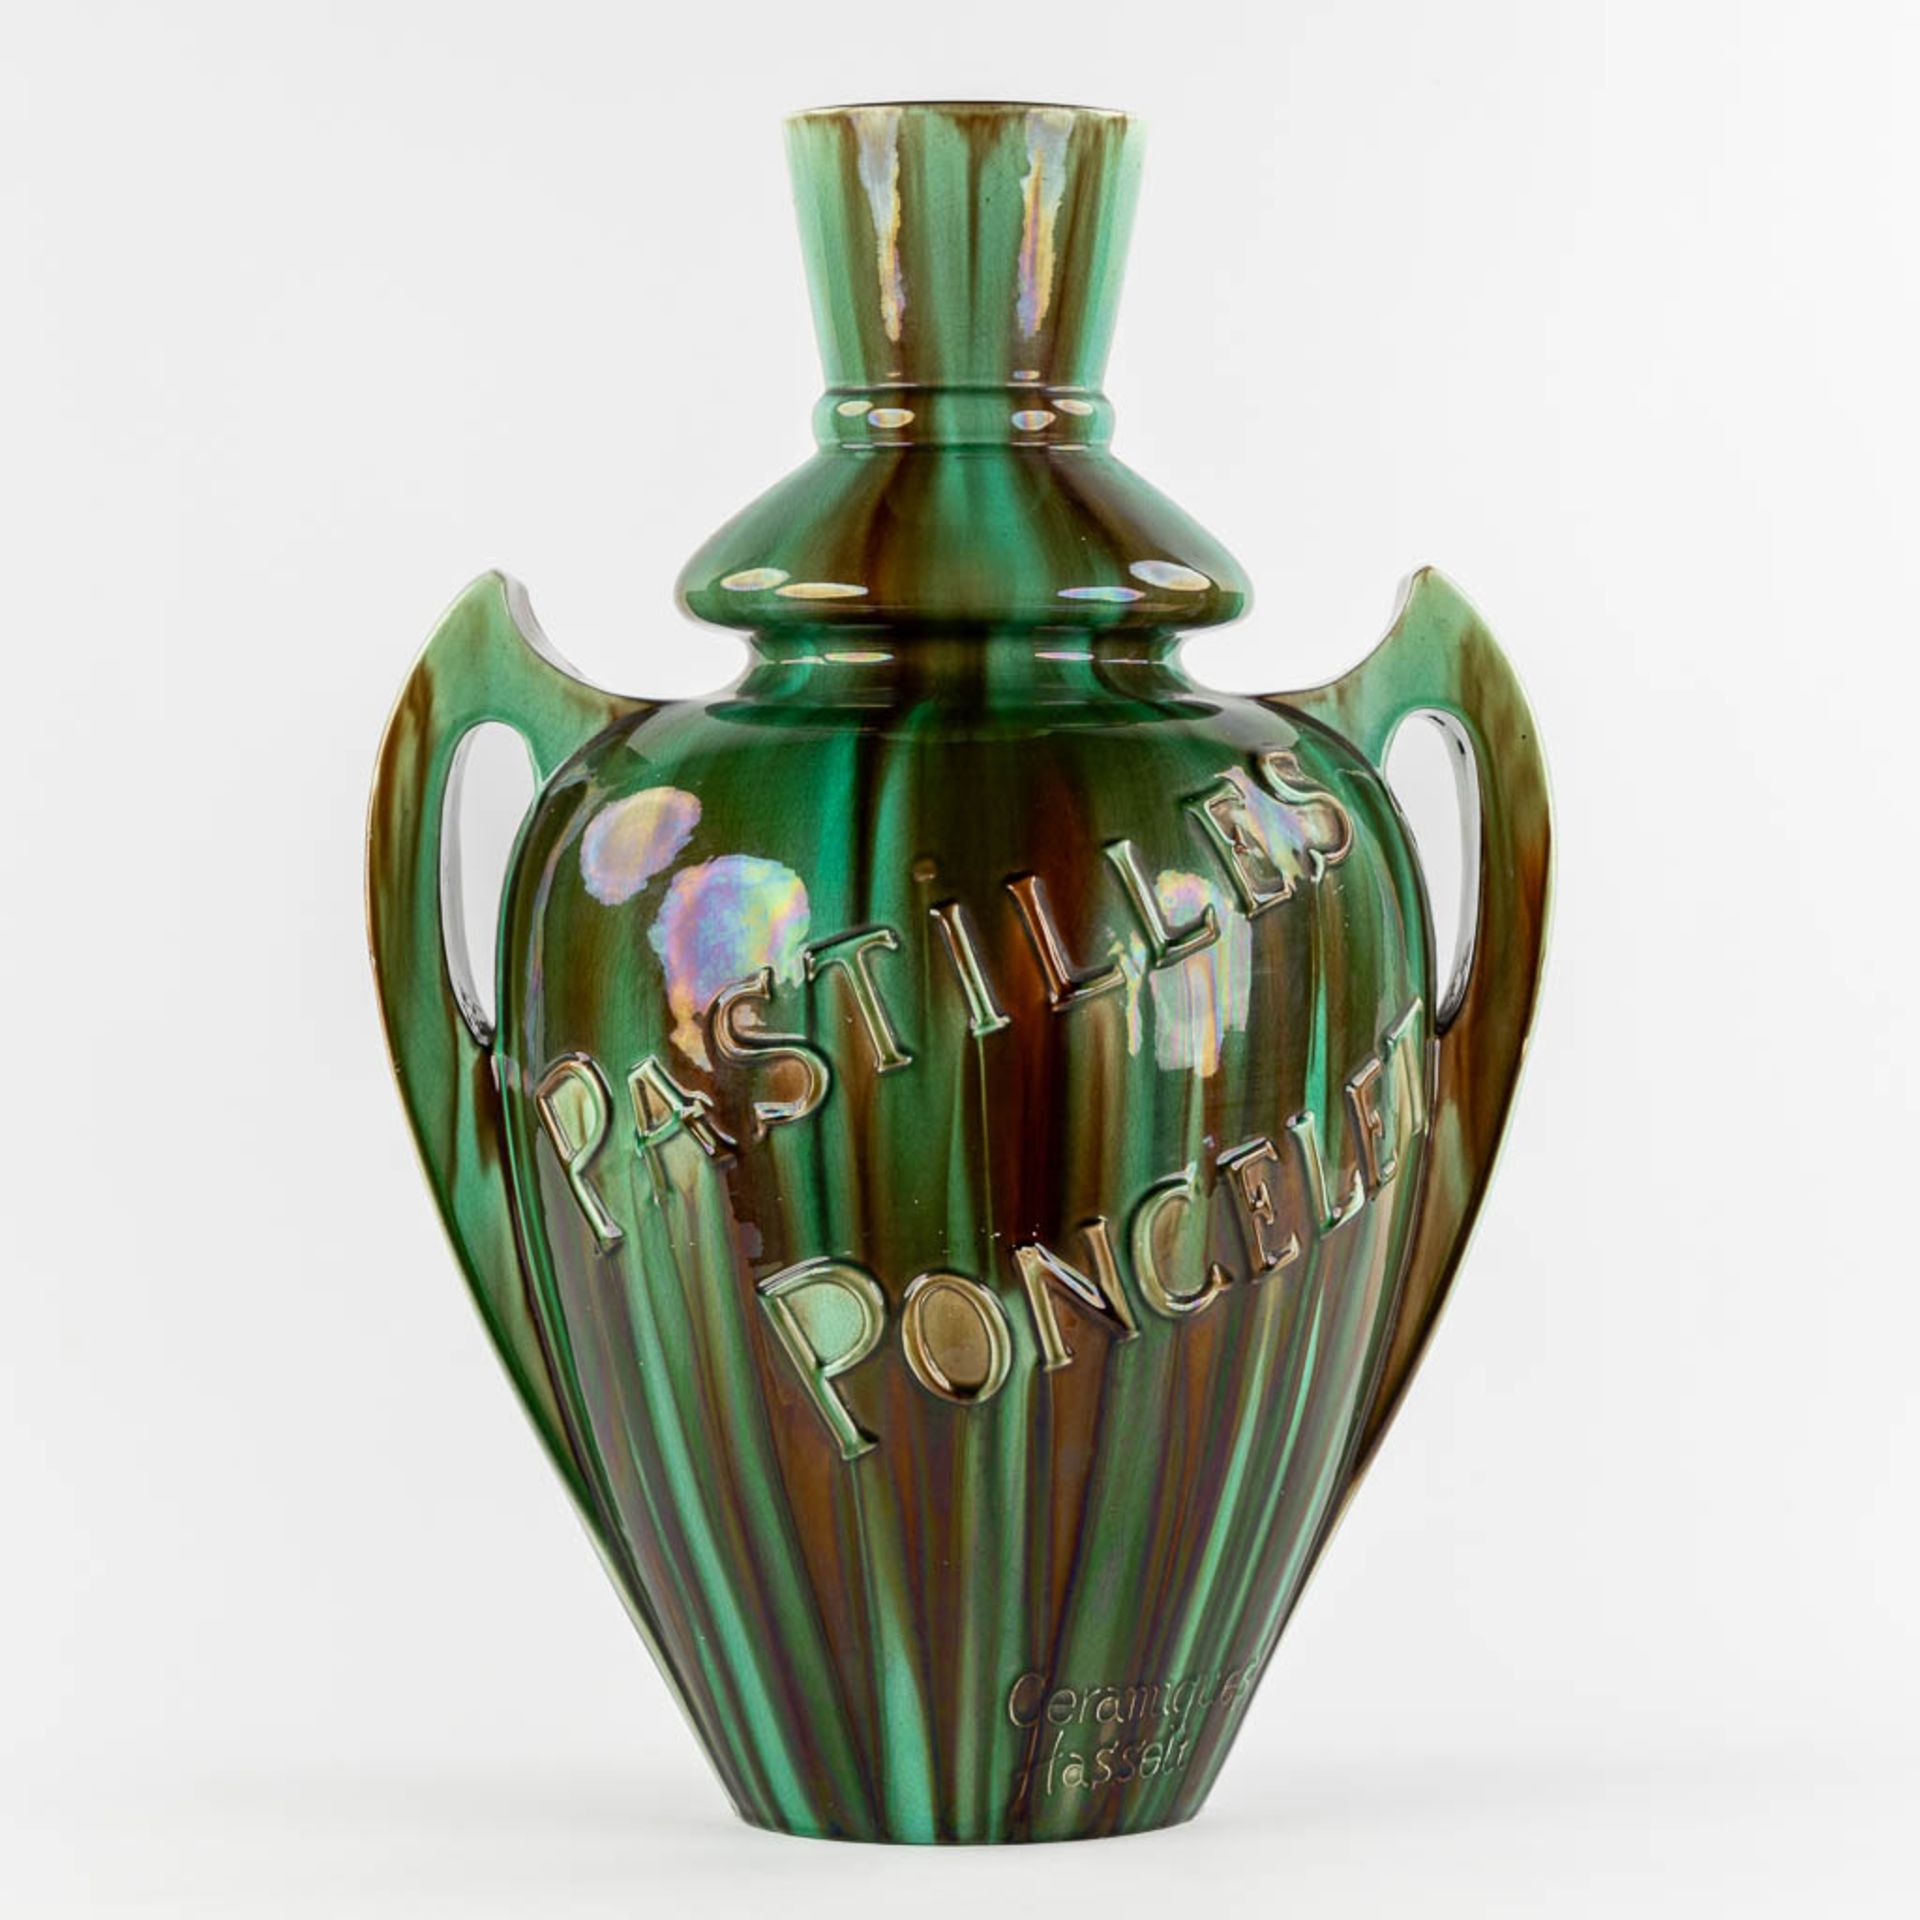 Ceramics of Hasselt, 'Pastilles Poncelet' a large faience vase. (L:34 x W:42 x H:60 cm)